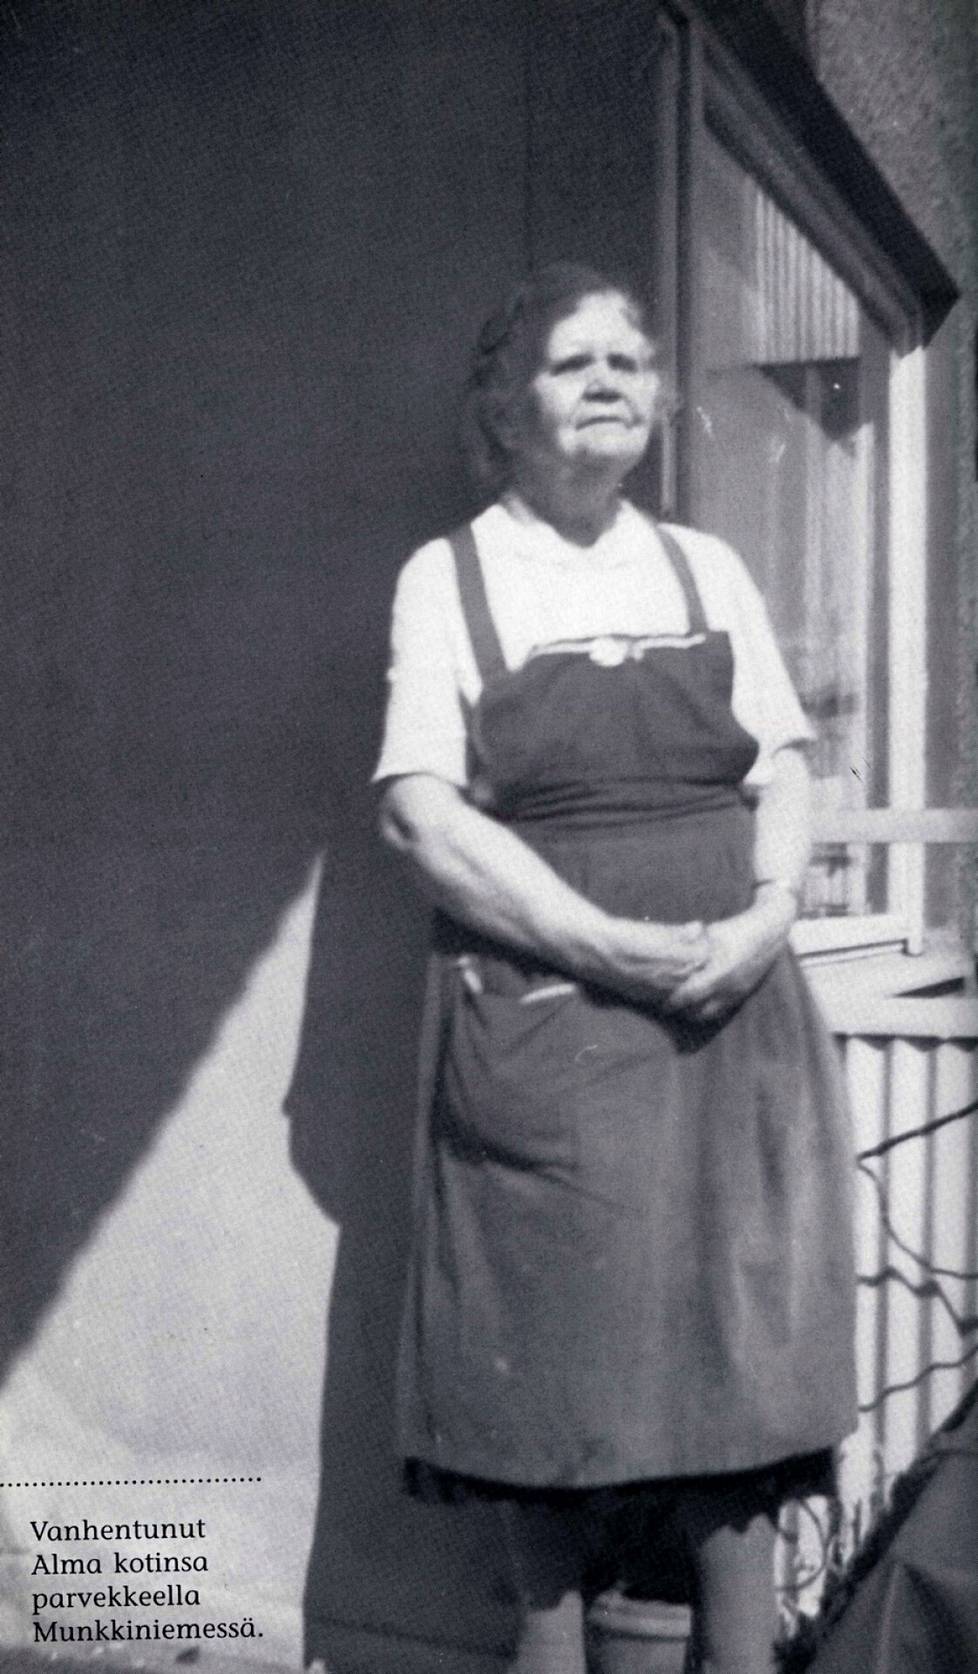 Toimittaja Anu Seppälä (1939–2021) kirjoitti Alma Pihlistä teoksen Jääkukkia keisarinnalle (Ajatus Kirjat, 2003). Siinä on myös yksityiskokoelmista saatuja kuvia, kuten tämä ajoittamaton valokuva Alma Pihlistä kotinsa parvekkeella Munkkiniemessä, jossa hän vietti eläkevuosiaan. Ranteessa oli yhä rippilahjaksi Pietarissa saatu kultainen rannerengas.